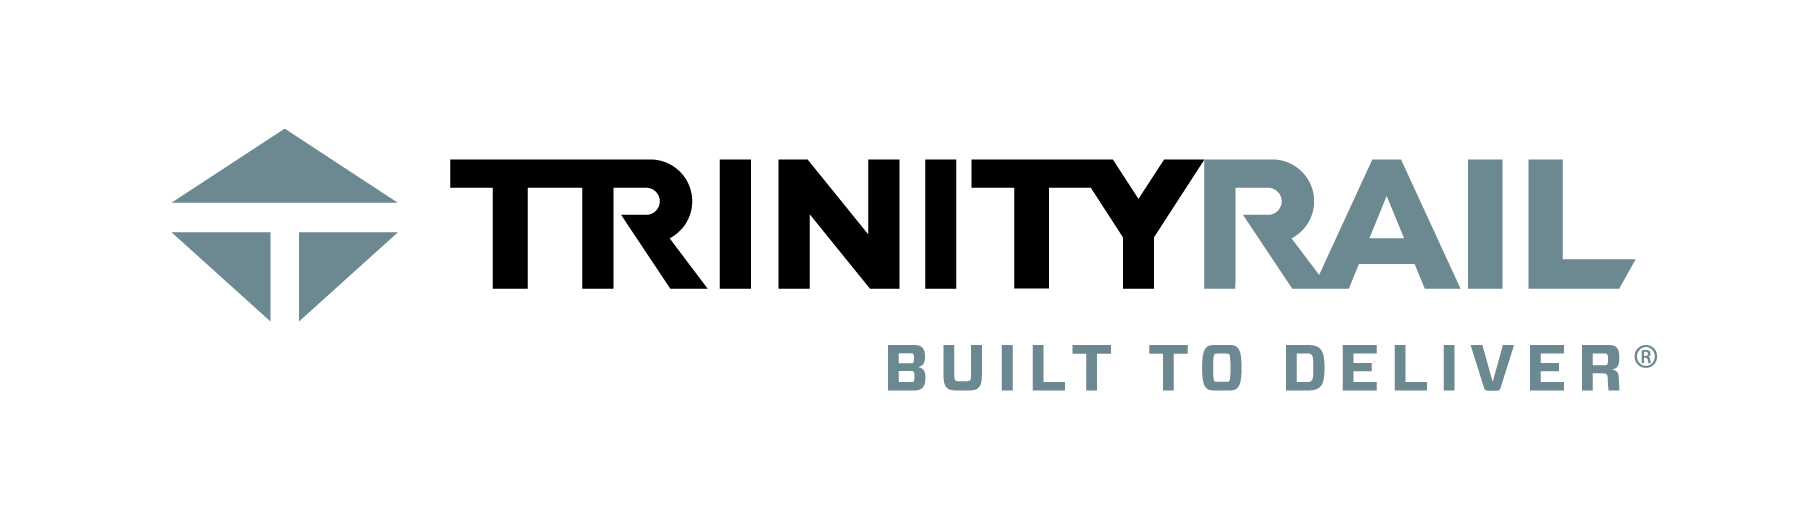 TrinityRail logo Steel Grey with tagline